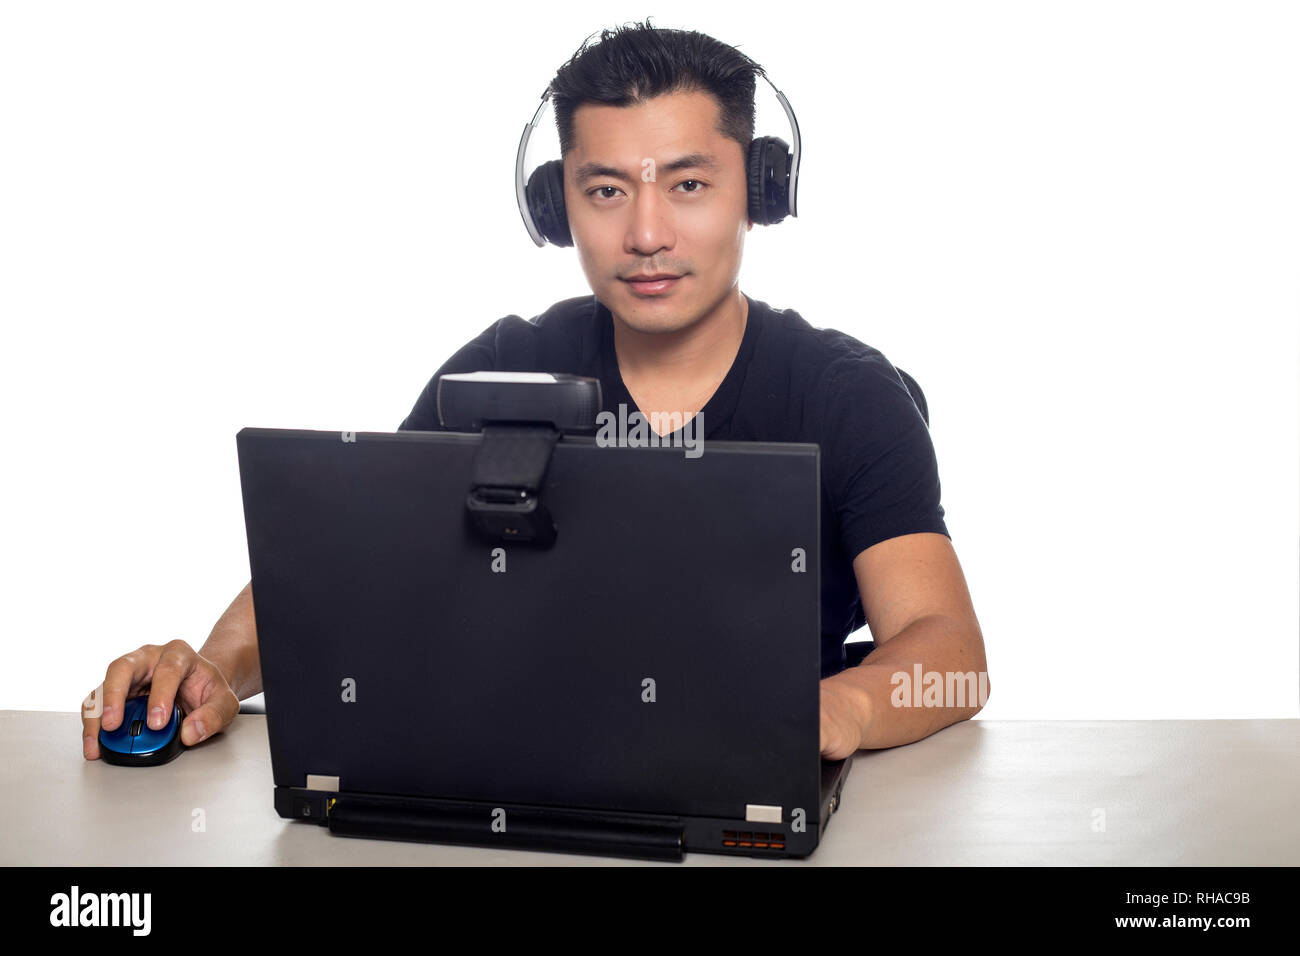 Asiatische Männer mit Kopfhörern Spielen eines Videospiels und Streaming  online mit einer Webcam auf einem Laptop-PC. Das Bild zeigt die  Unterhaltungsindustrie und El Stockfotografie - Alamy